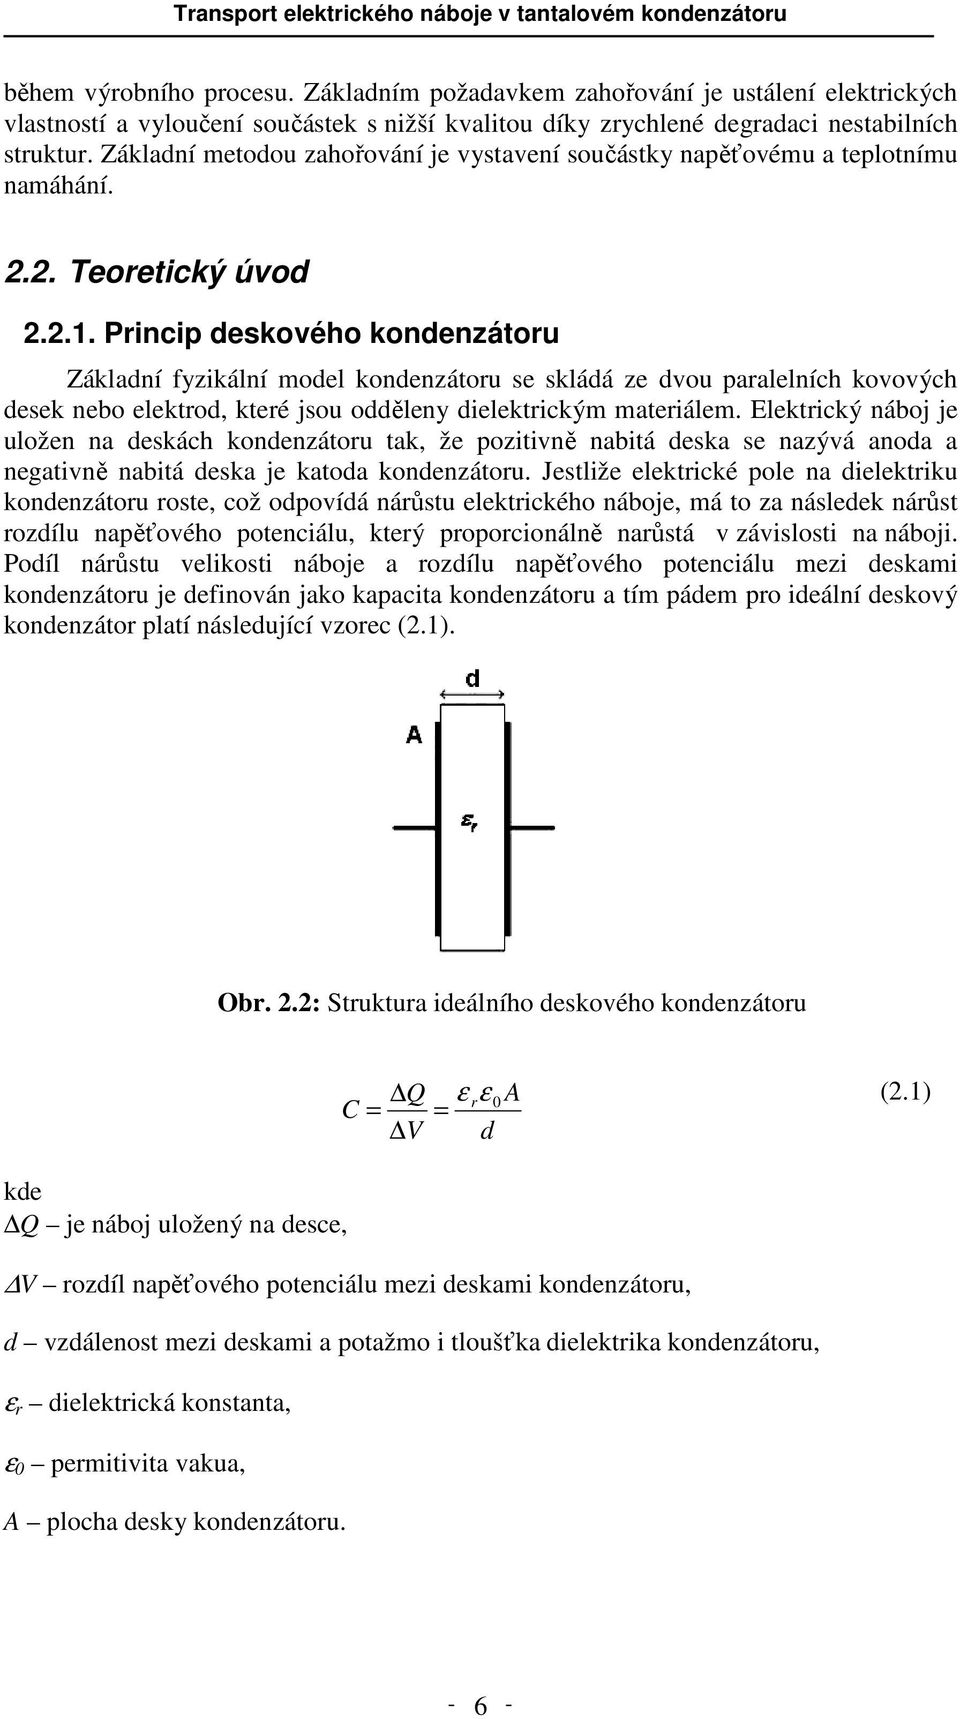 Princip deskového kondenzátoru Základní fyzikální model kondenzátoru se skládá ze dvou paralelních kovových desek nebo elektrod, které jsou odděleny dielektrickým materiálem.